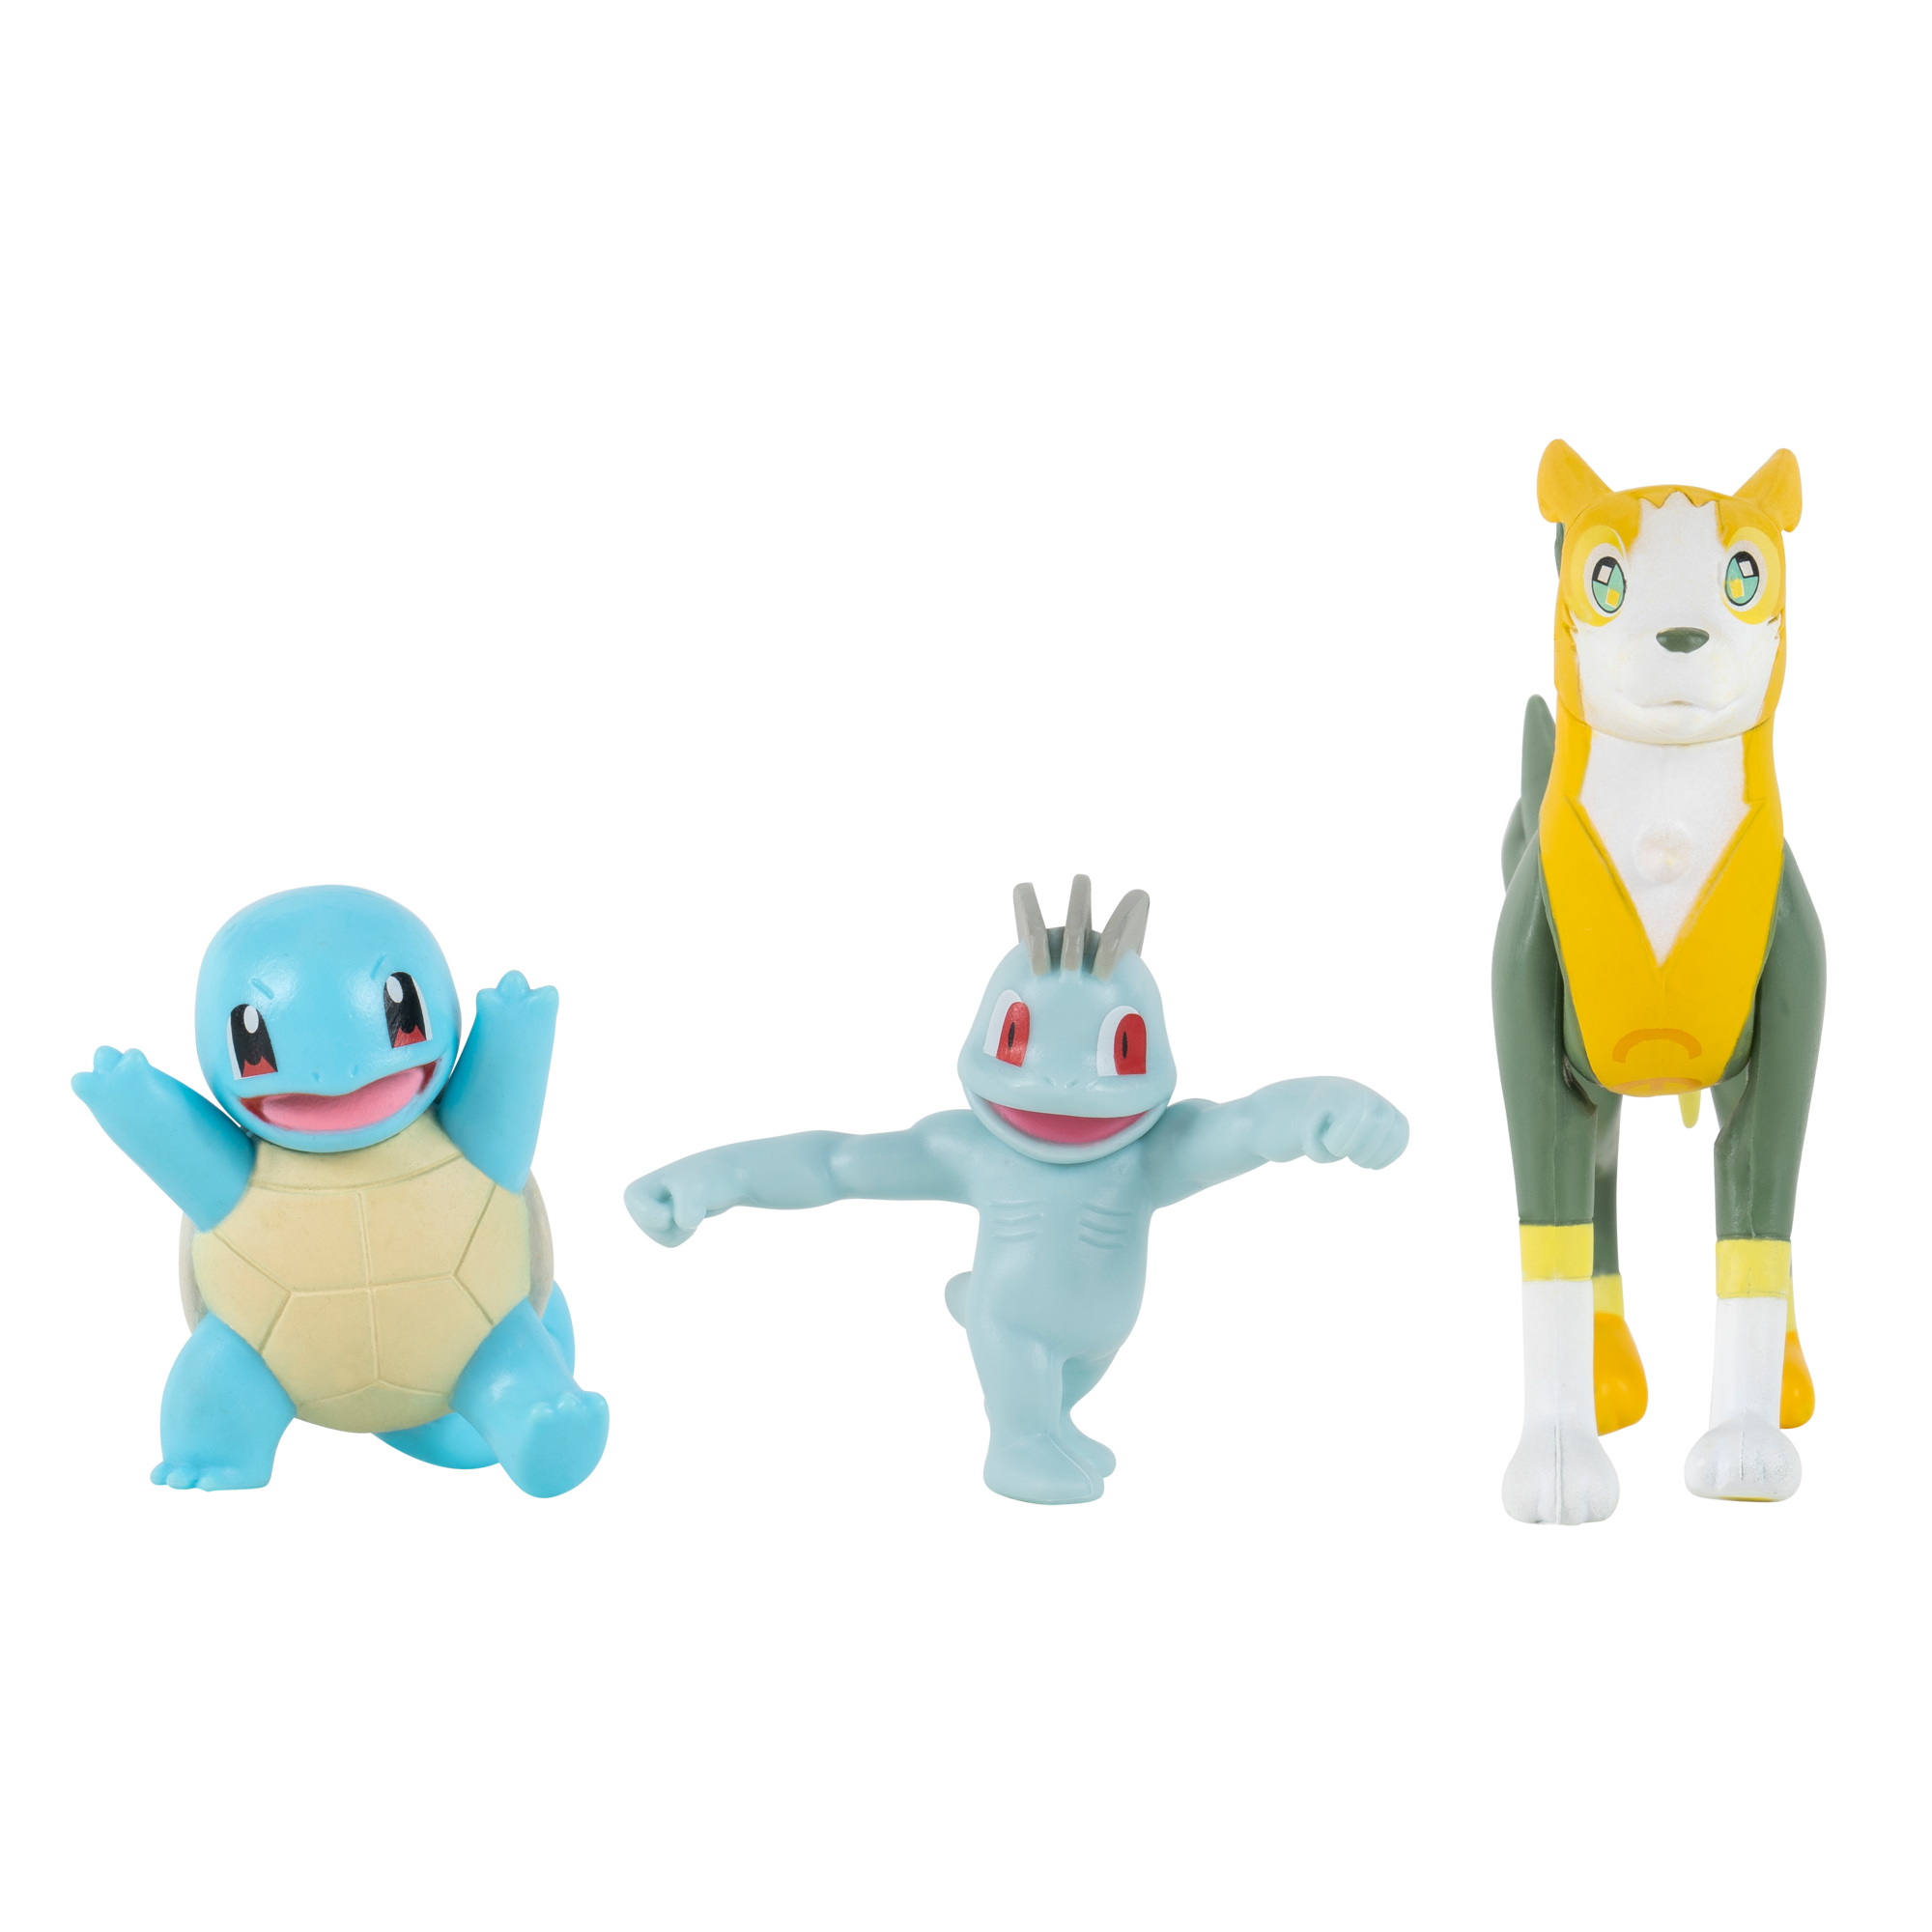 Pokemon - Battle Figure Set 3 pack - Squirtle, Machop & Boltund (PKW0180)